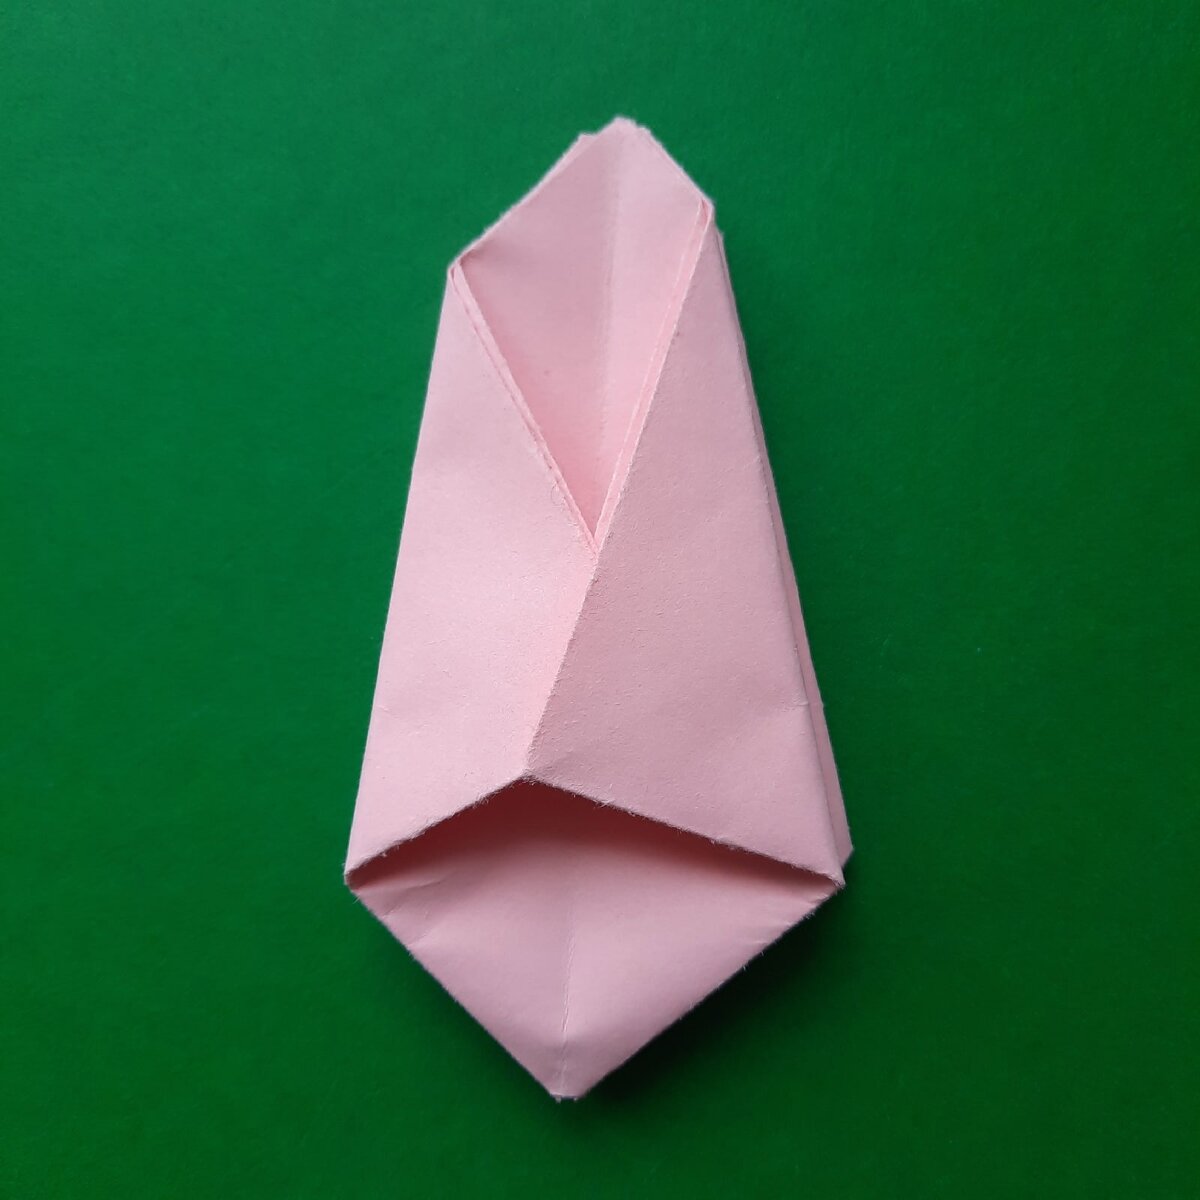 Конспект занятия по оригами «Тюльпан» в подготовительной группе.